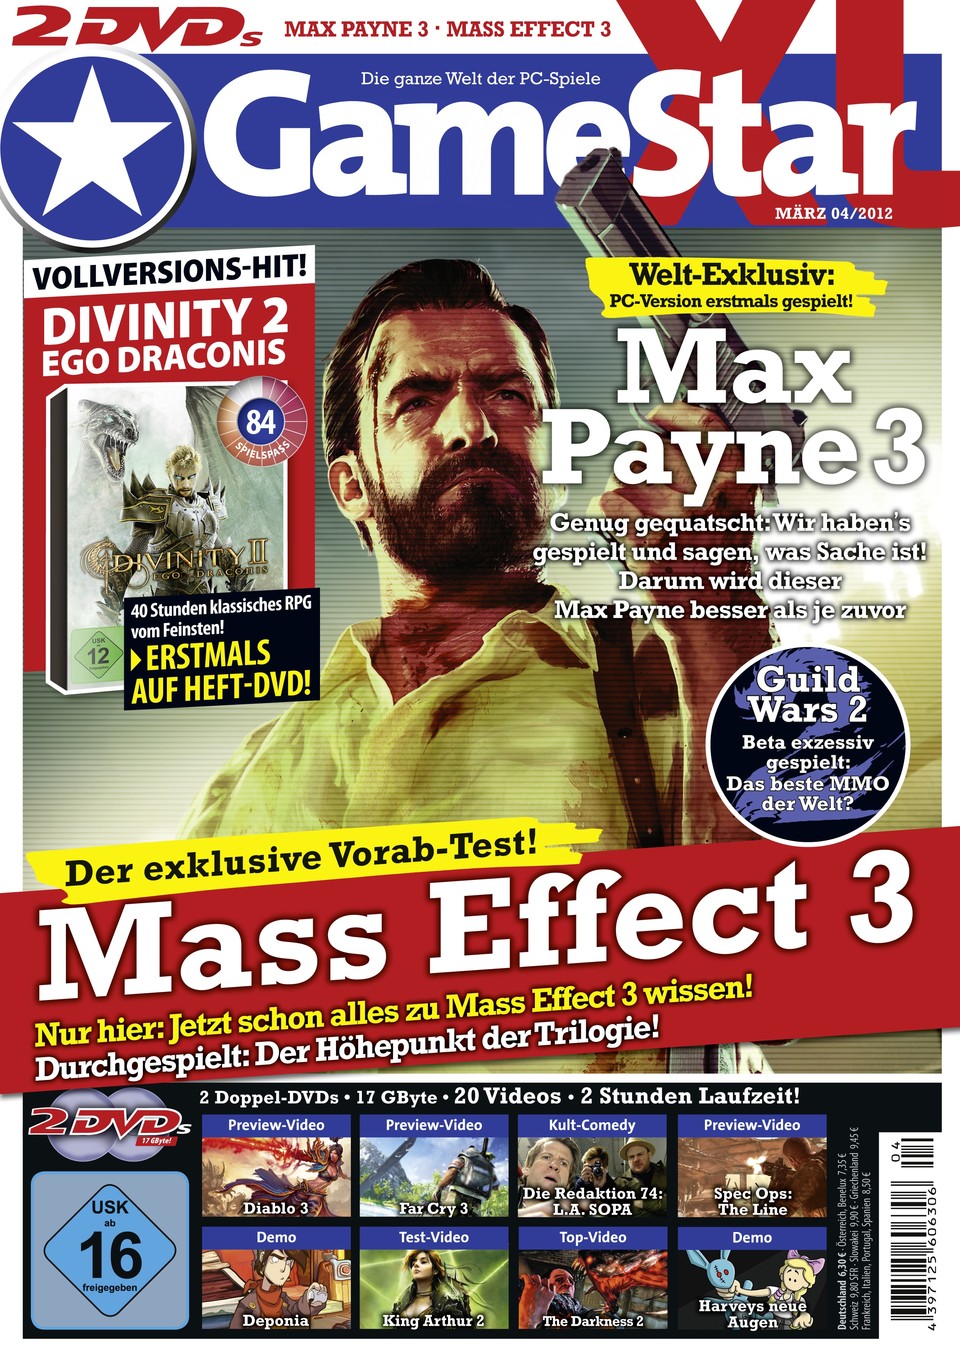 Wir haben die PC-Version von Max Payne 3 angespielt. Mehr dazu in der Titelstory der GameStar-Ausgabe 04/2012. - ab 29.2. am Kiosk.